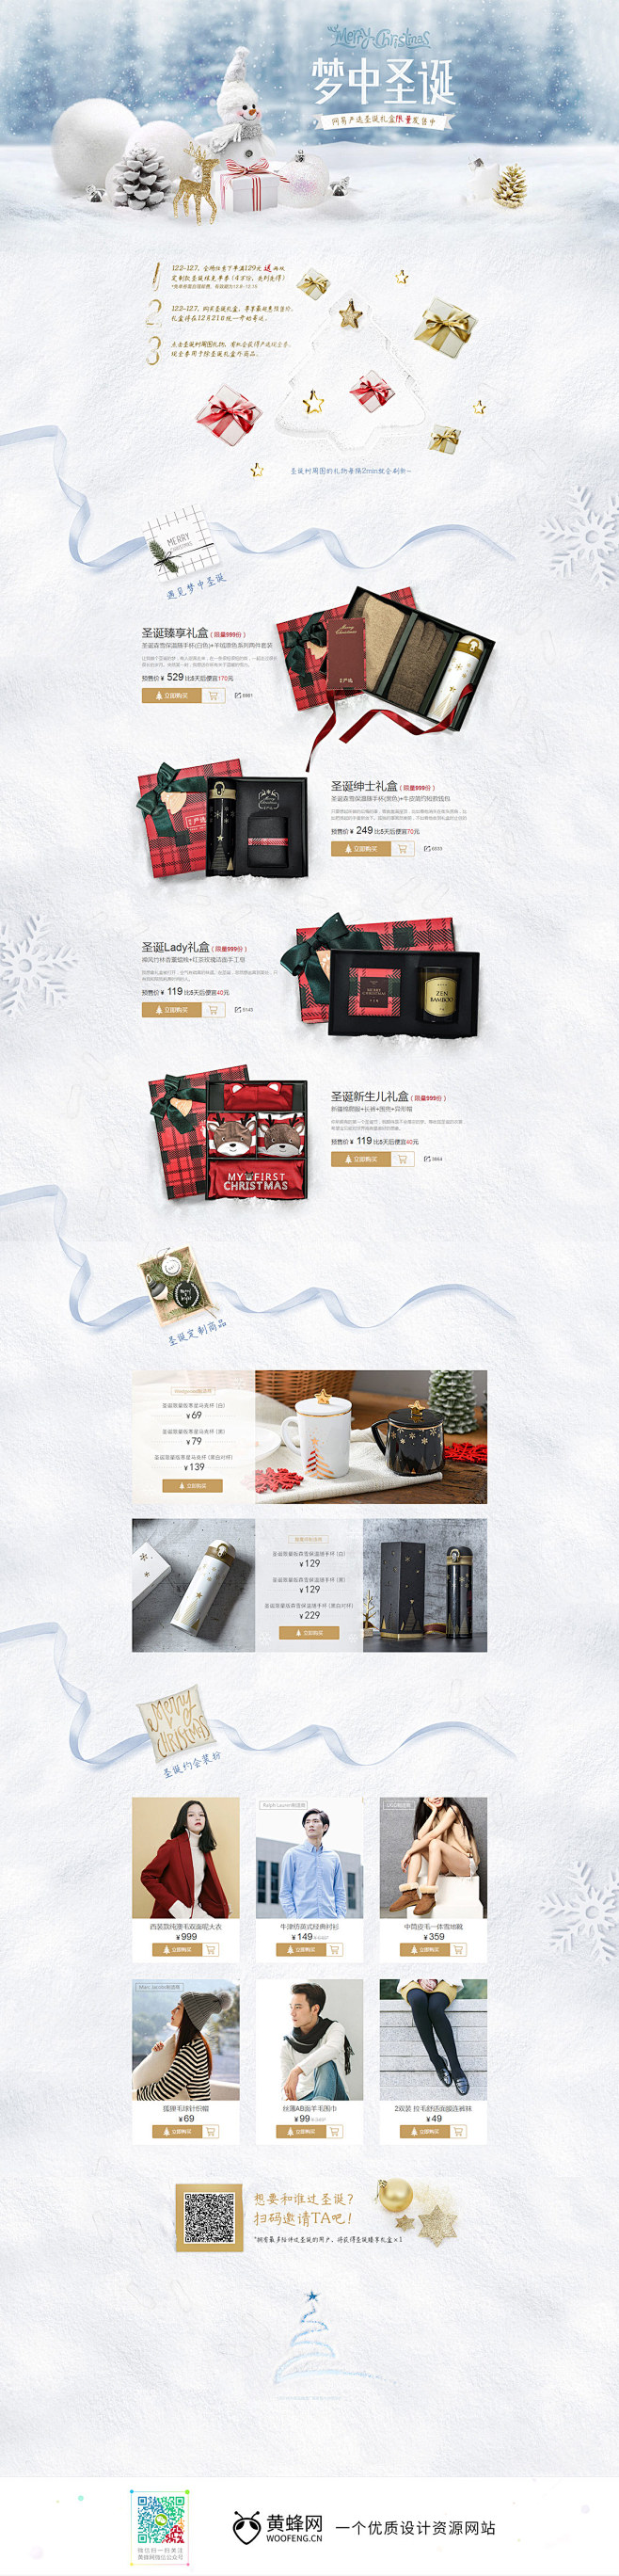 网易严选圣诞节活动专题页面设计 来源自黄...